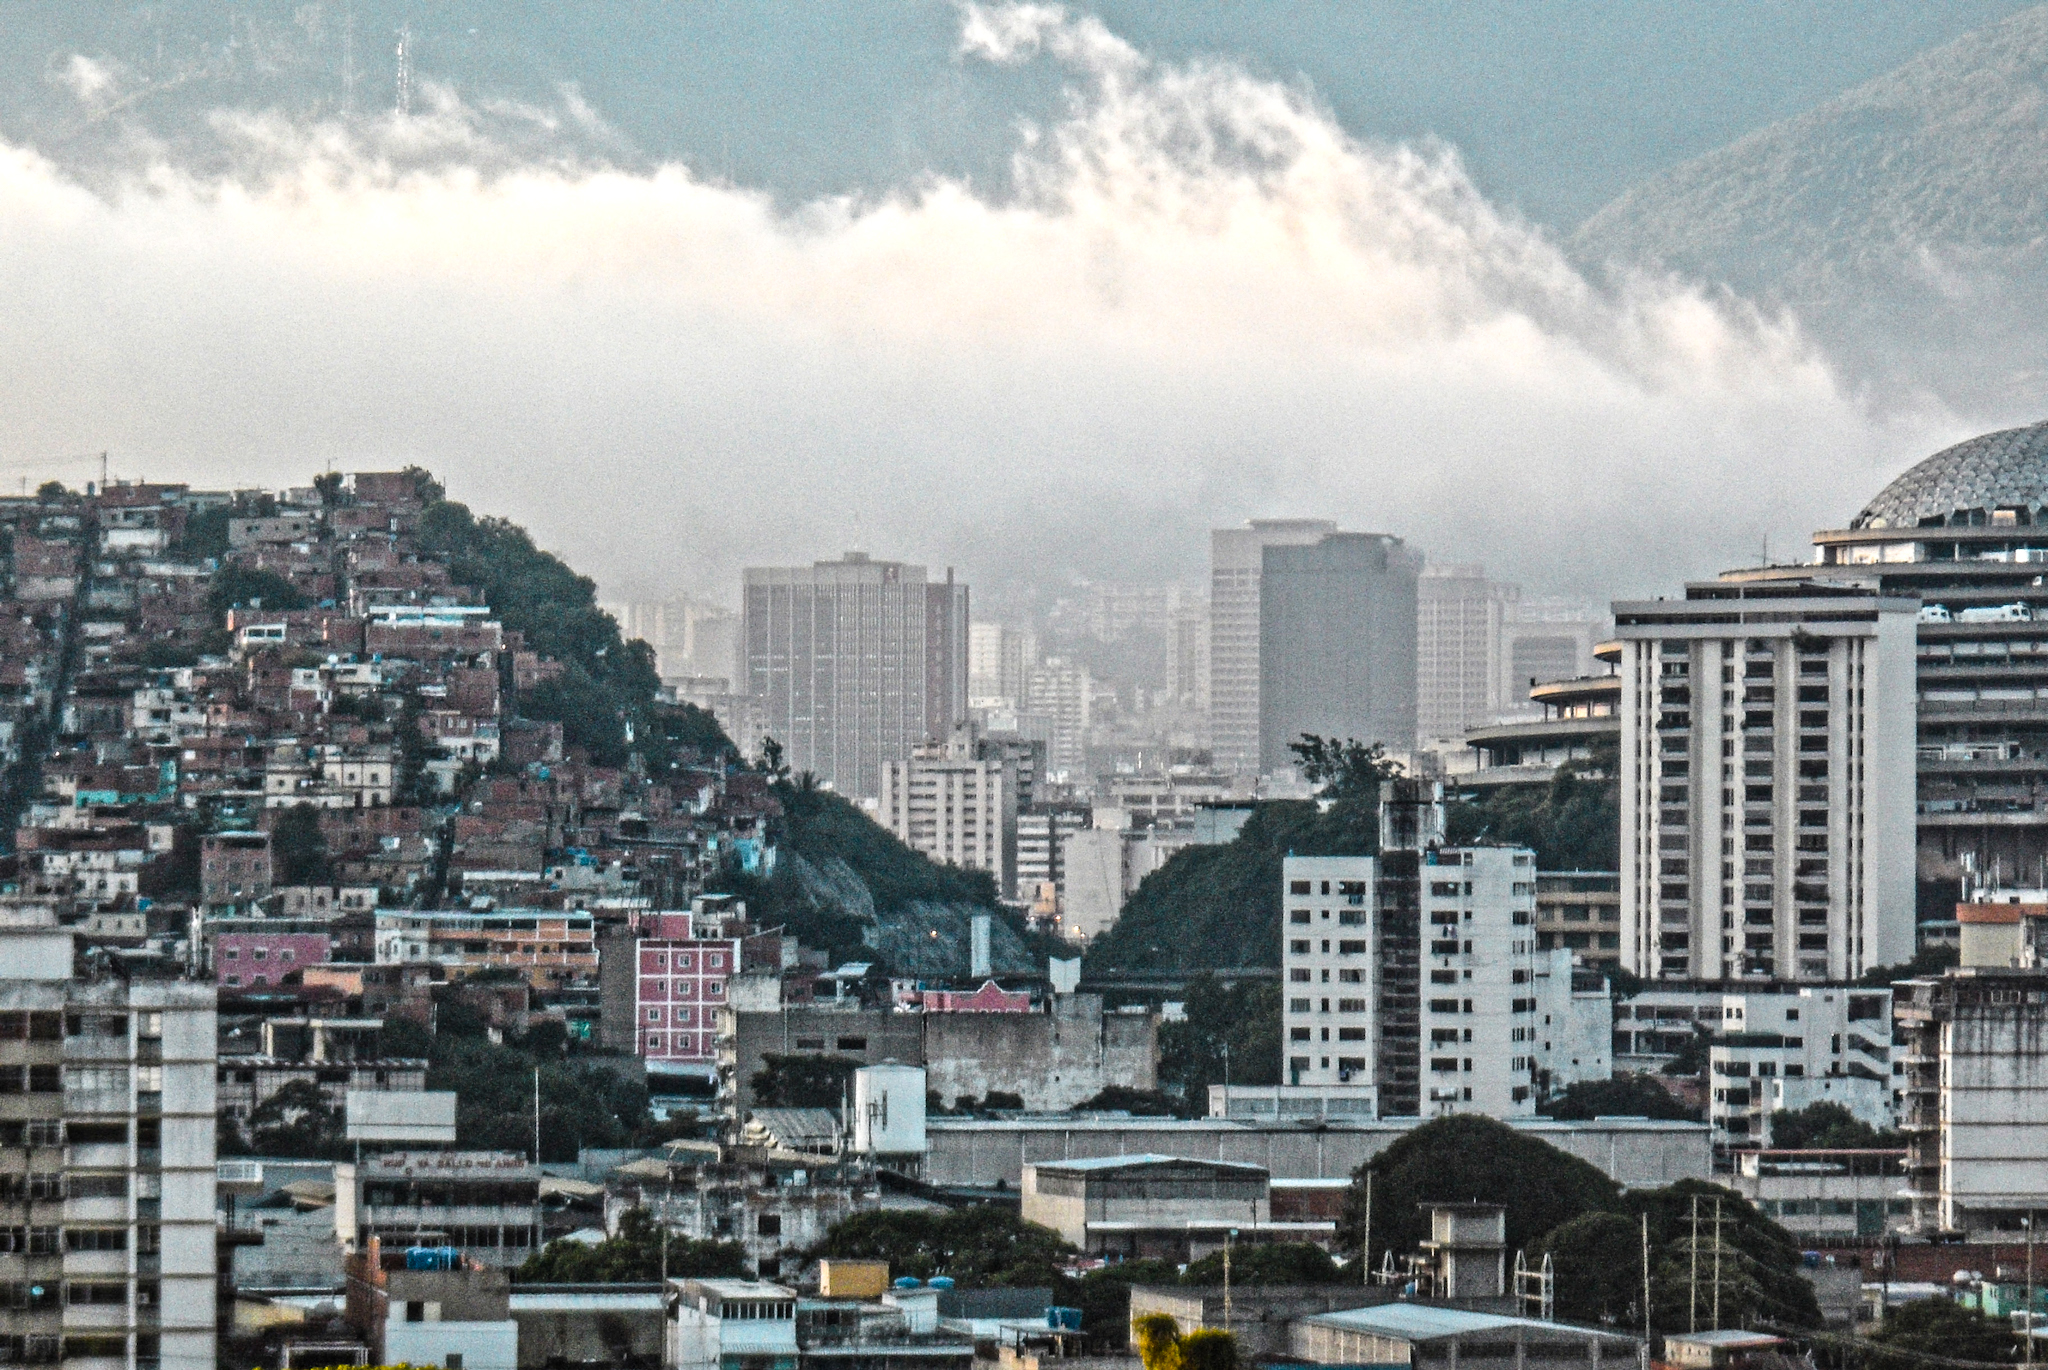 Caracas desde mi lente